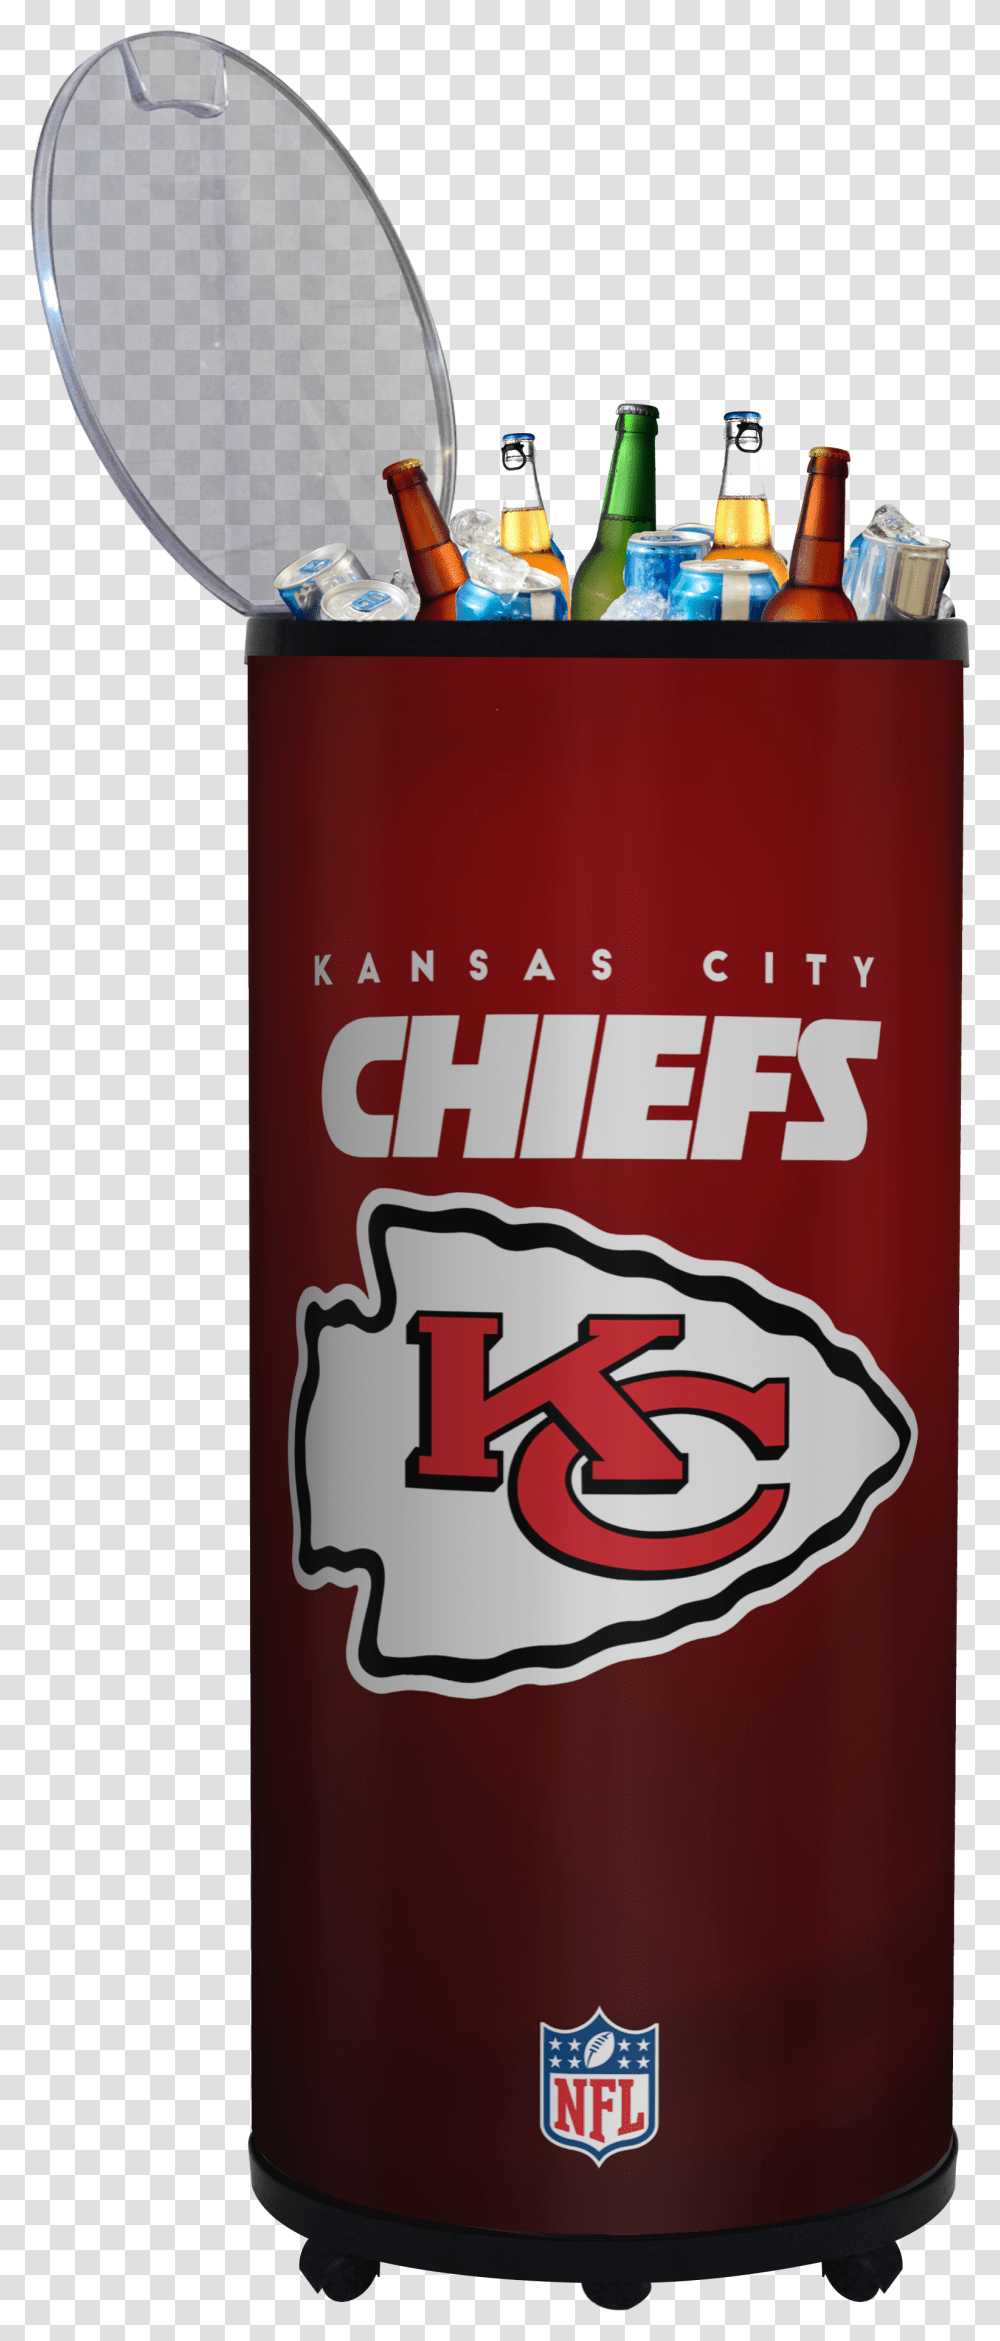 Kansas City Chiefs 5 S Barrel Beverages Drinks, Tin, Can, Aluminium, Ketchup Transparent Png